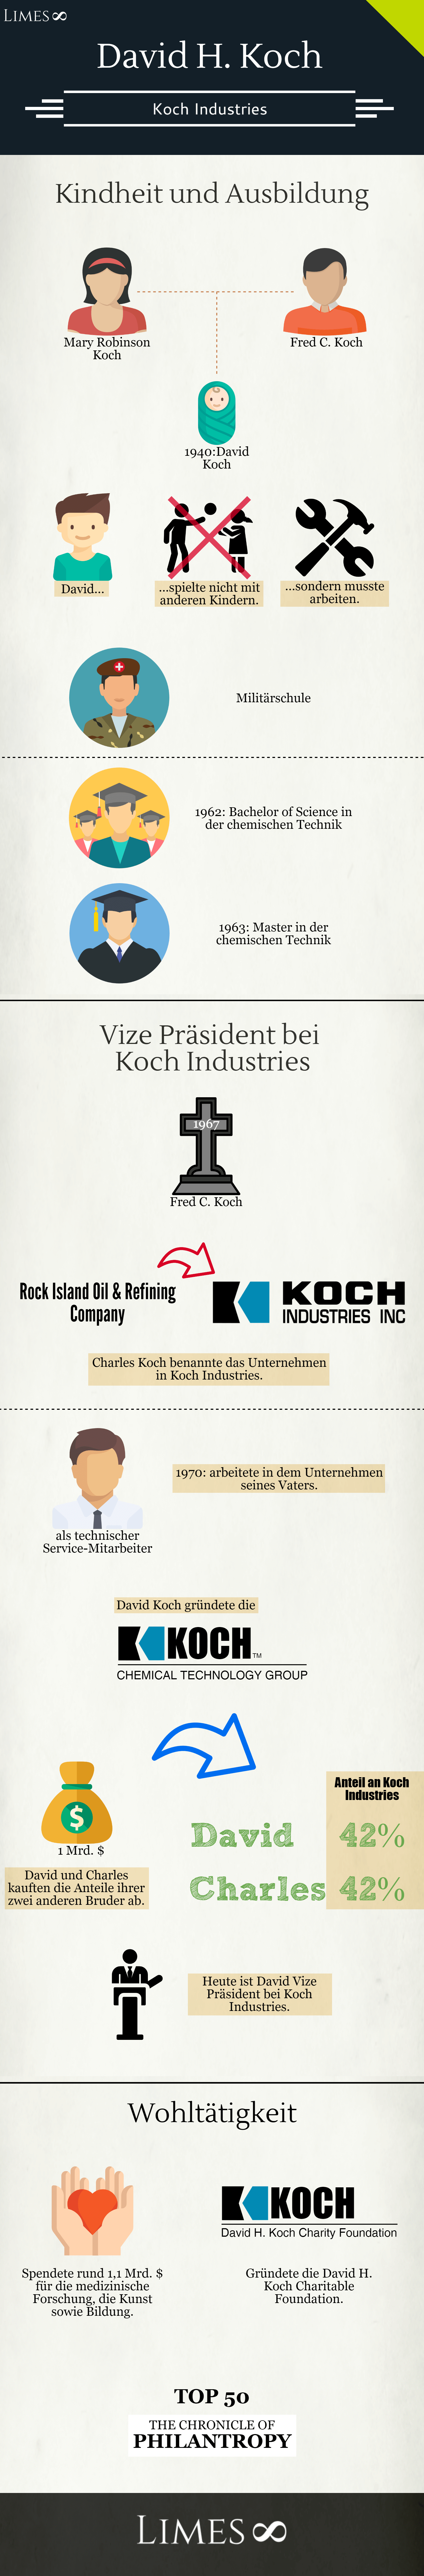 Infografik über David Koch